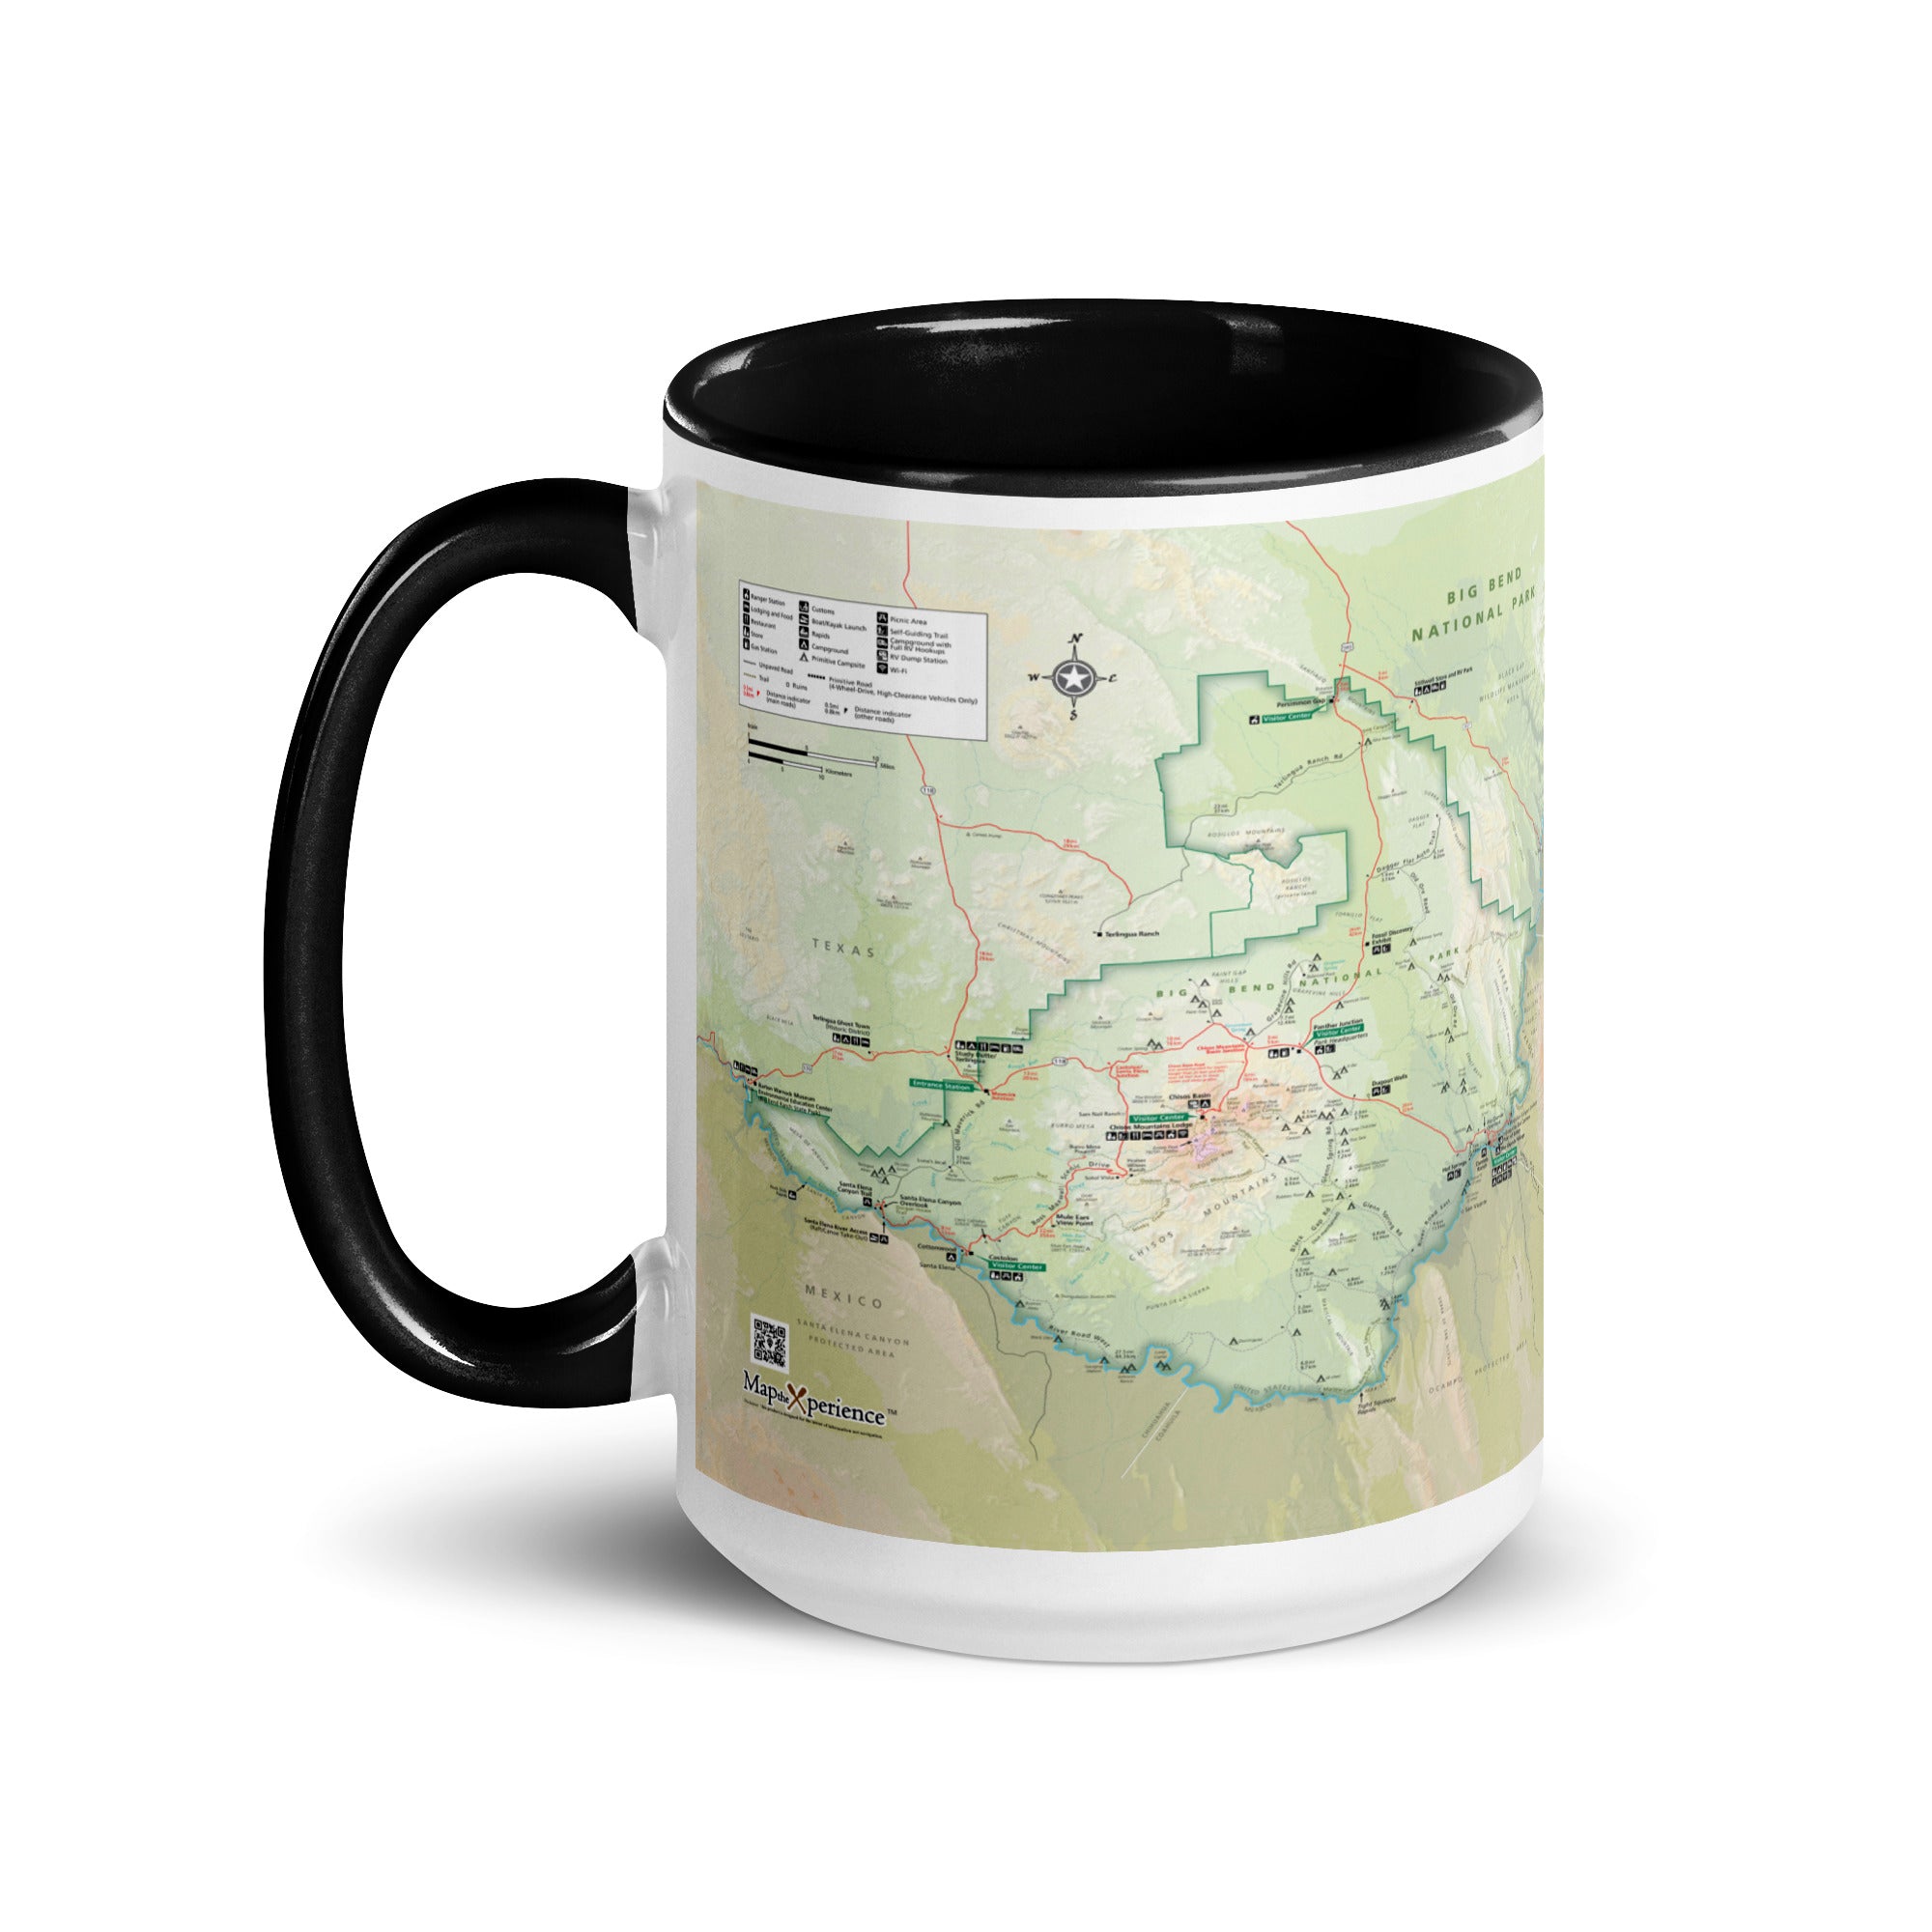 Big Bend National Park Mug with Black Inside